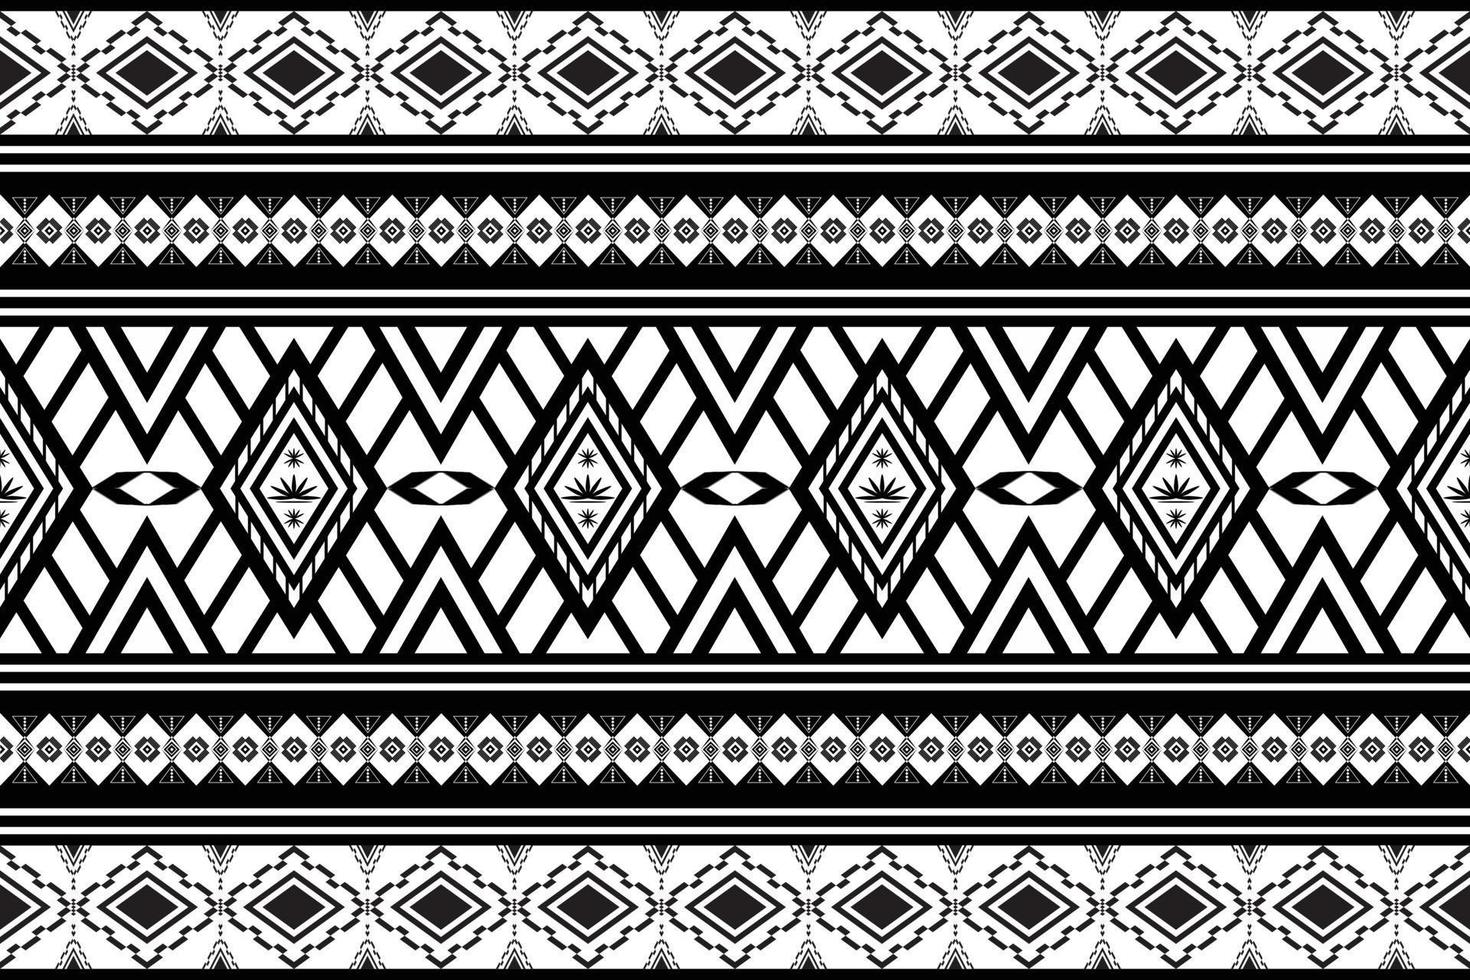 geometrisches design muster stoff ethnisch orientalisch traditionell abstrakt schwarz und weiß. für Stickereistil, Vorhang, Hintergrund, Teppich, Tapete, Stoff, Verpackung, Batik, Stoff, Vektorillustration. vektor